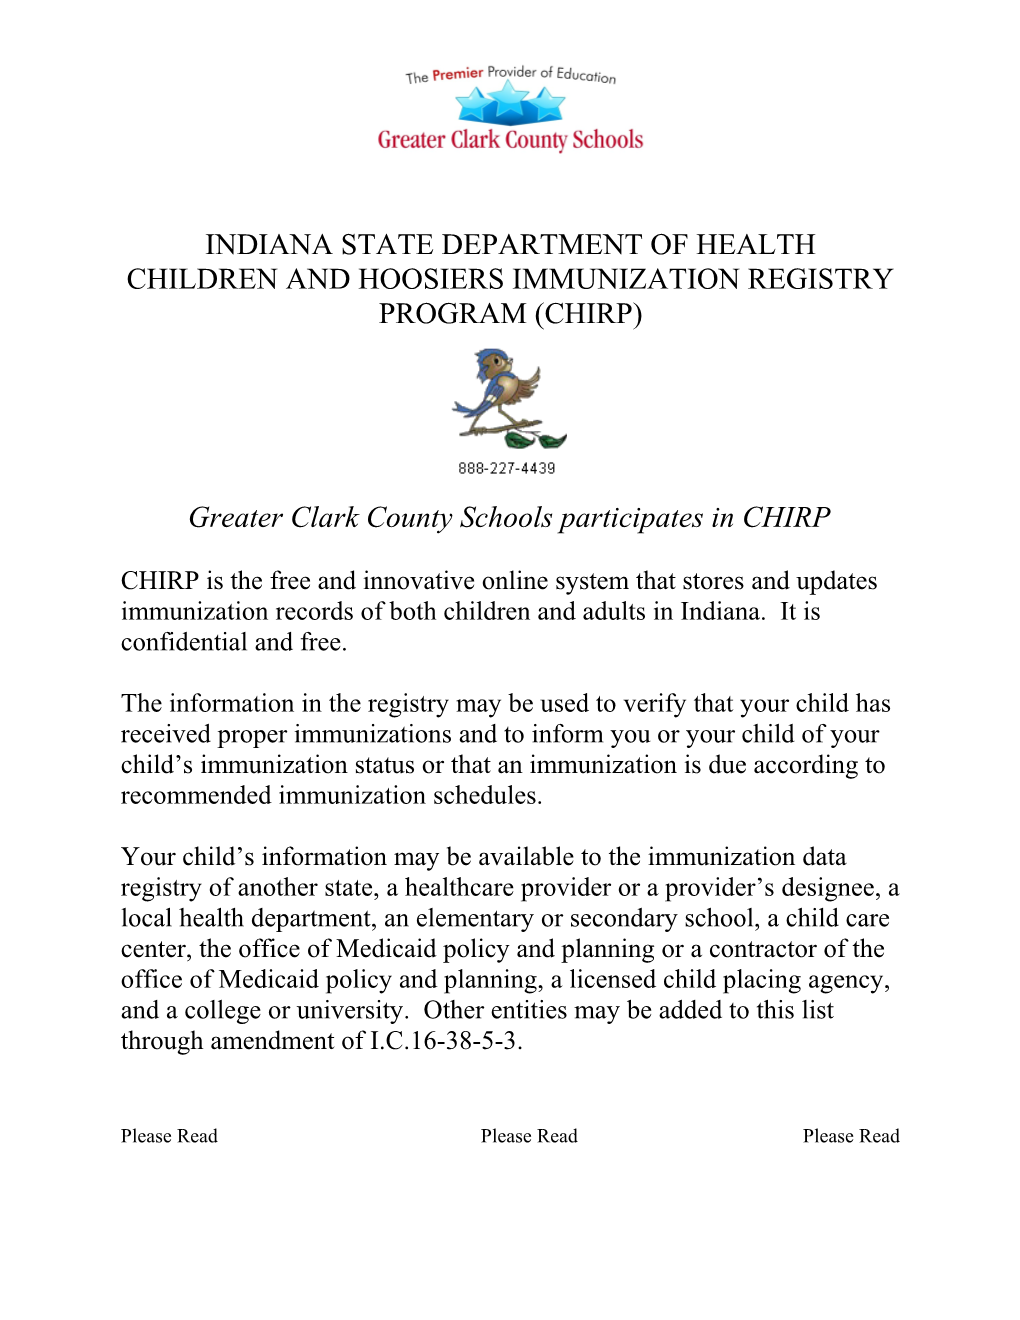 Children and Hoosiers Immunization Registry Program (Chirp)